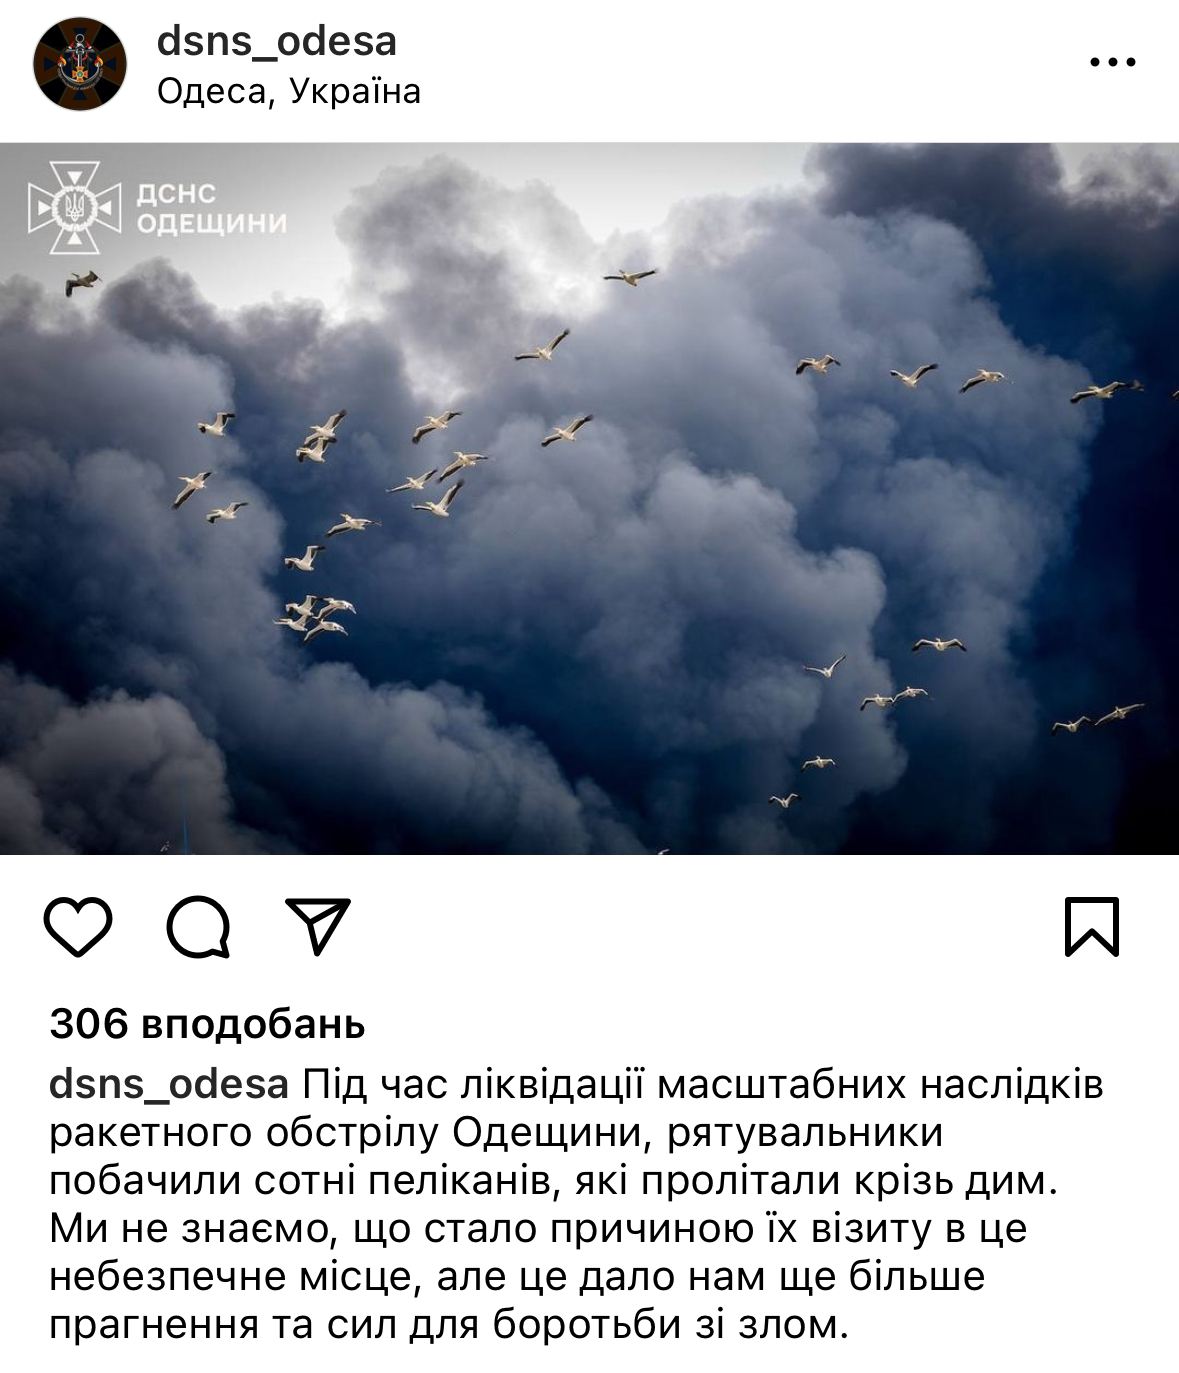 Природа також потерпає від війни. Фото пеліканів, які летять крізь дим від ракетного обстрілу Одещини, розчулило мережу